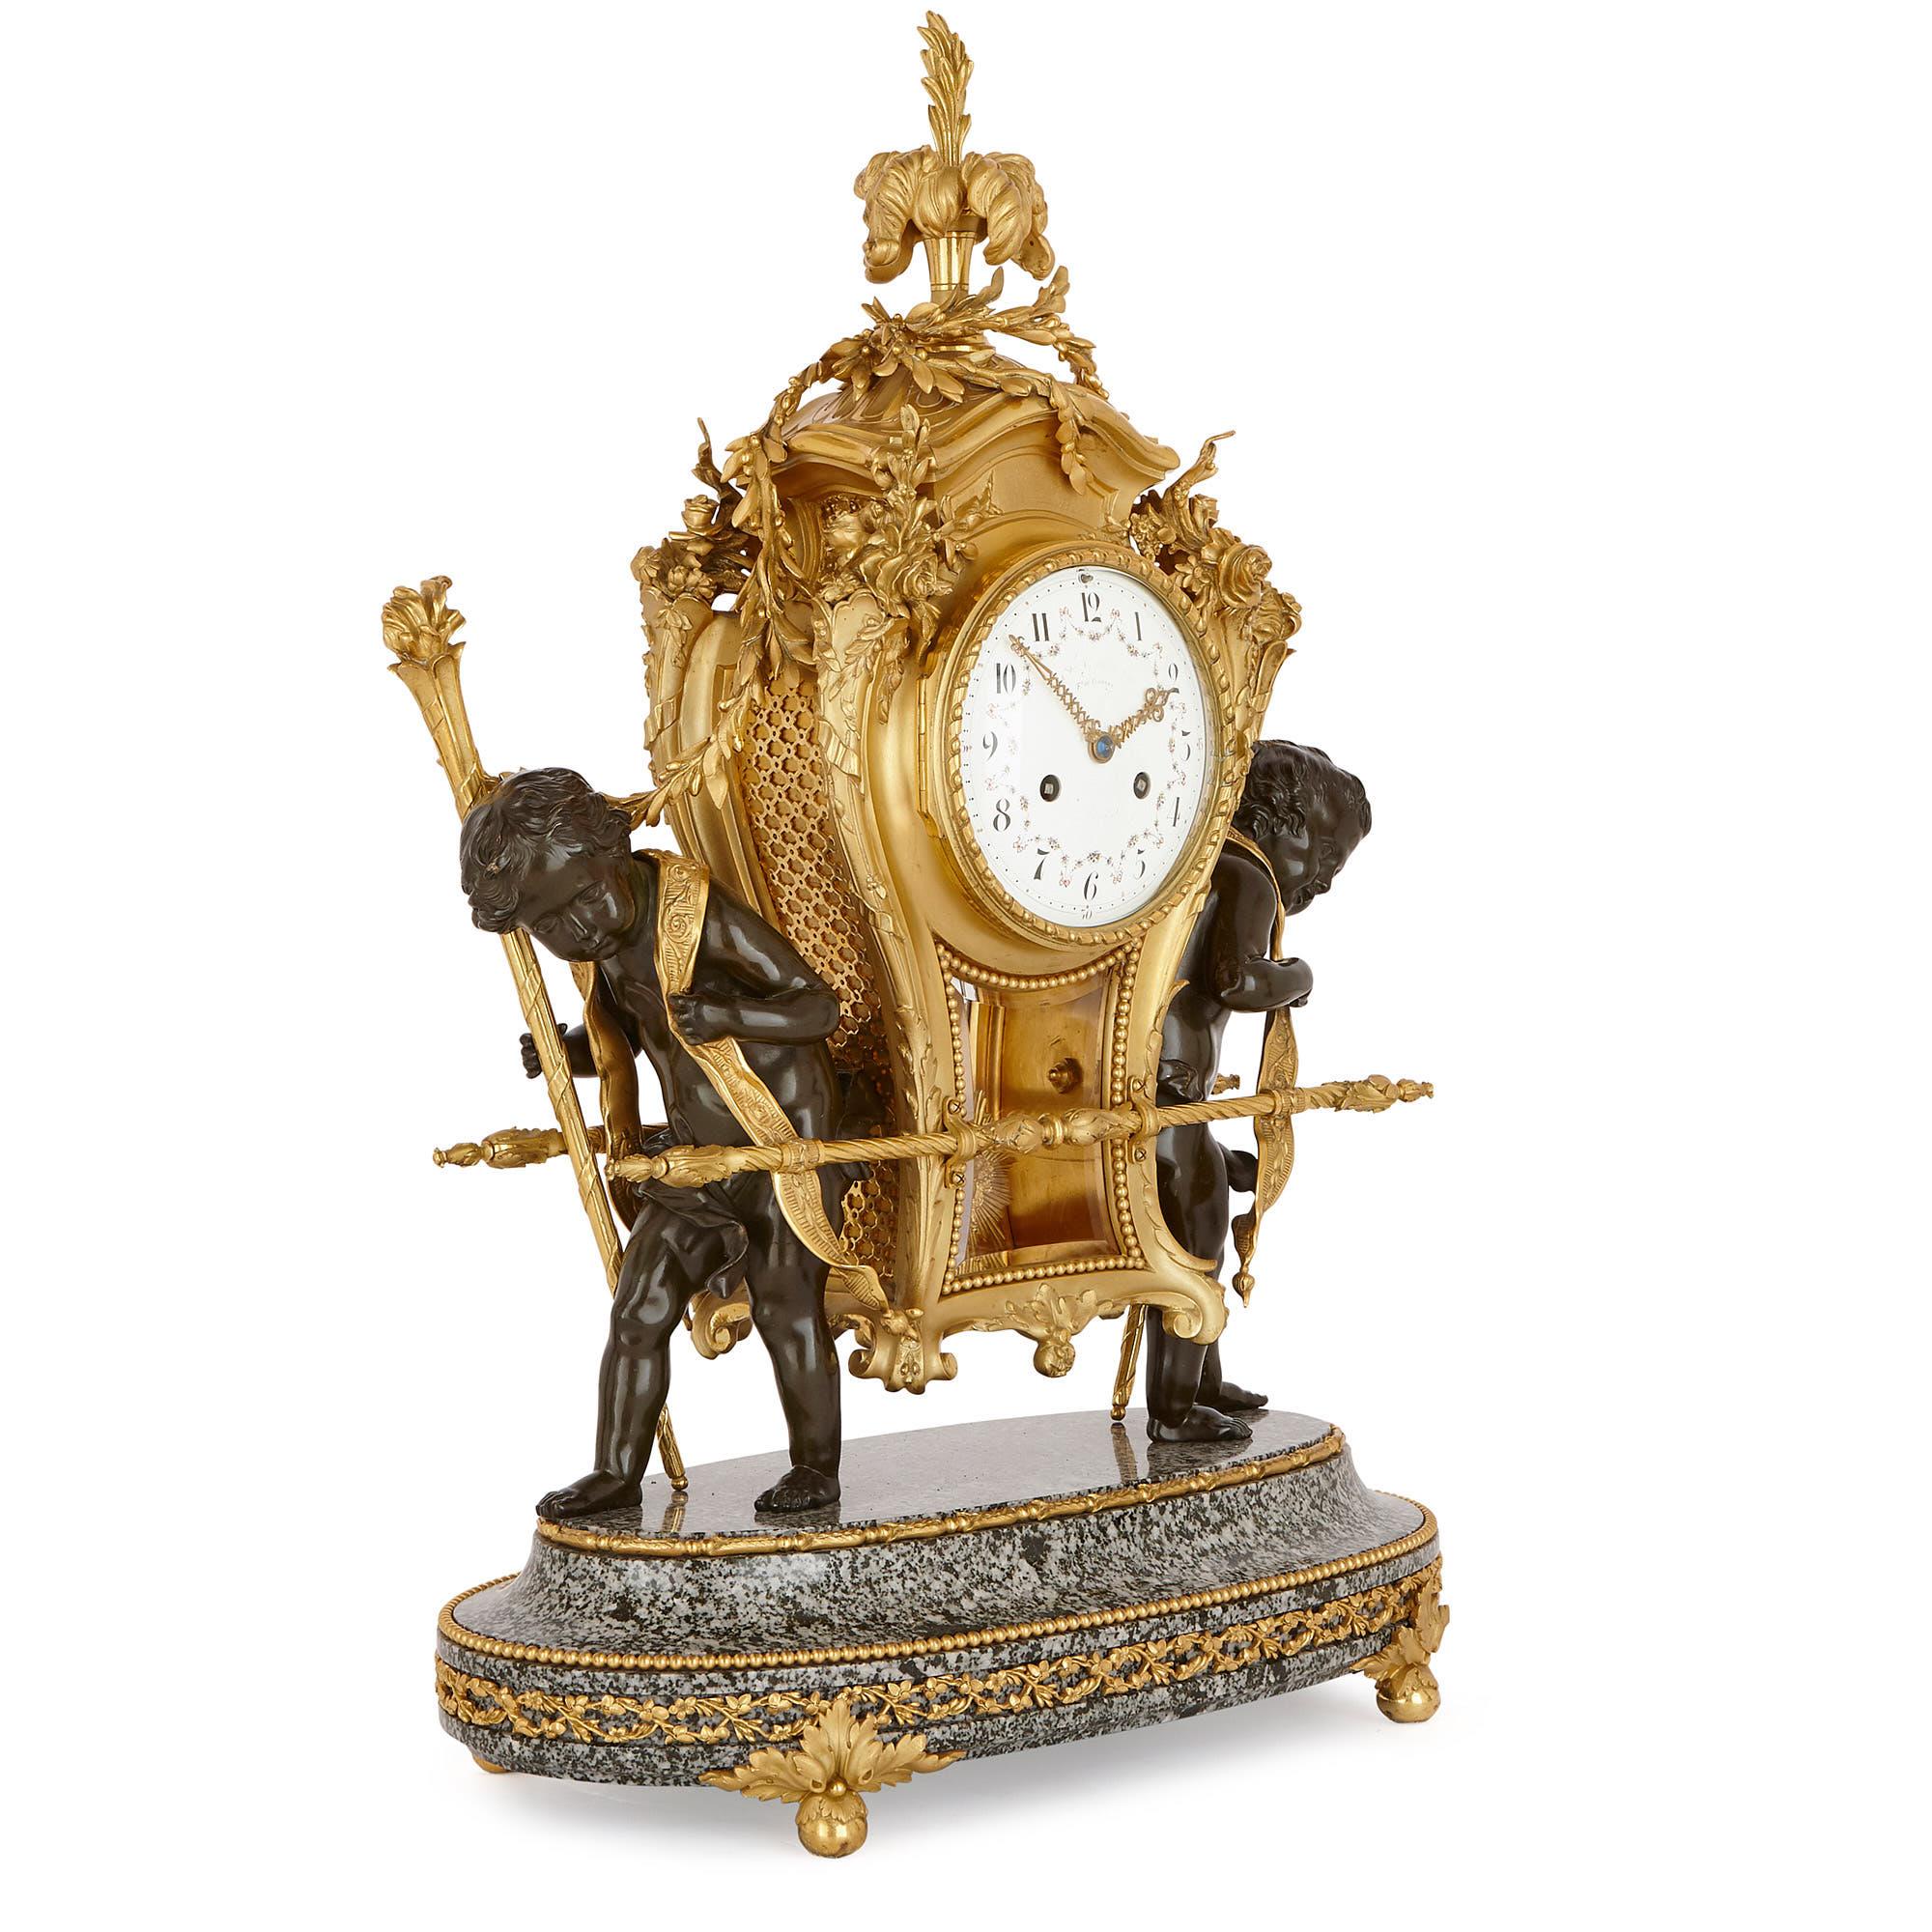 Dieses dreiteilige Set, bestehend aus einer Uhr und einem Paar flankierender Kandelaber, ist ein einzigartiges und reizvolles Stück dekorativer Kunst. 

Die Uhr ist einer Sänfte aus dem 18. Jahrhundert nachempfunden, d. h. einem überdachten Stuhl,